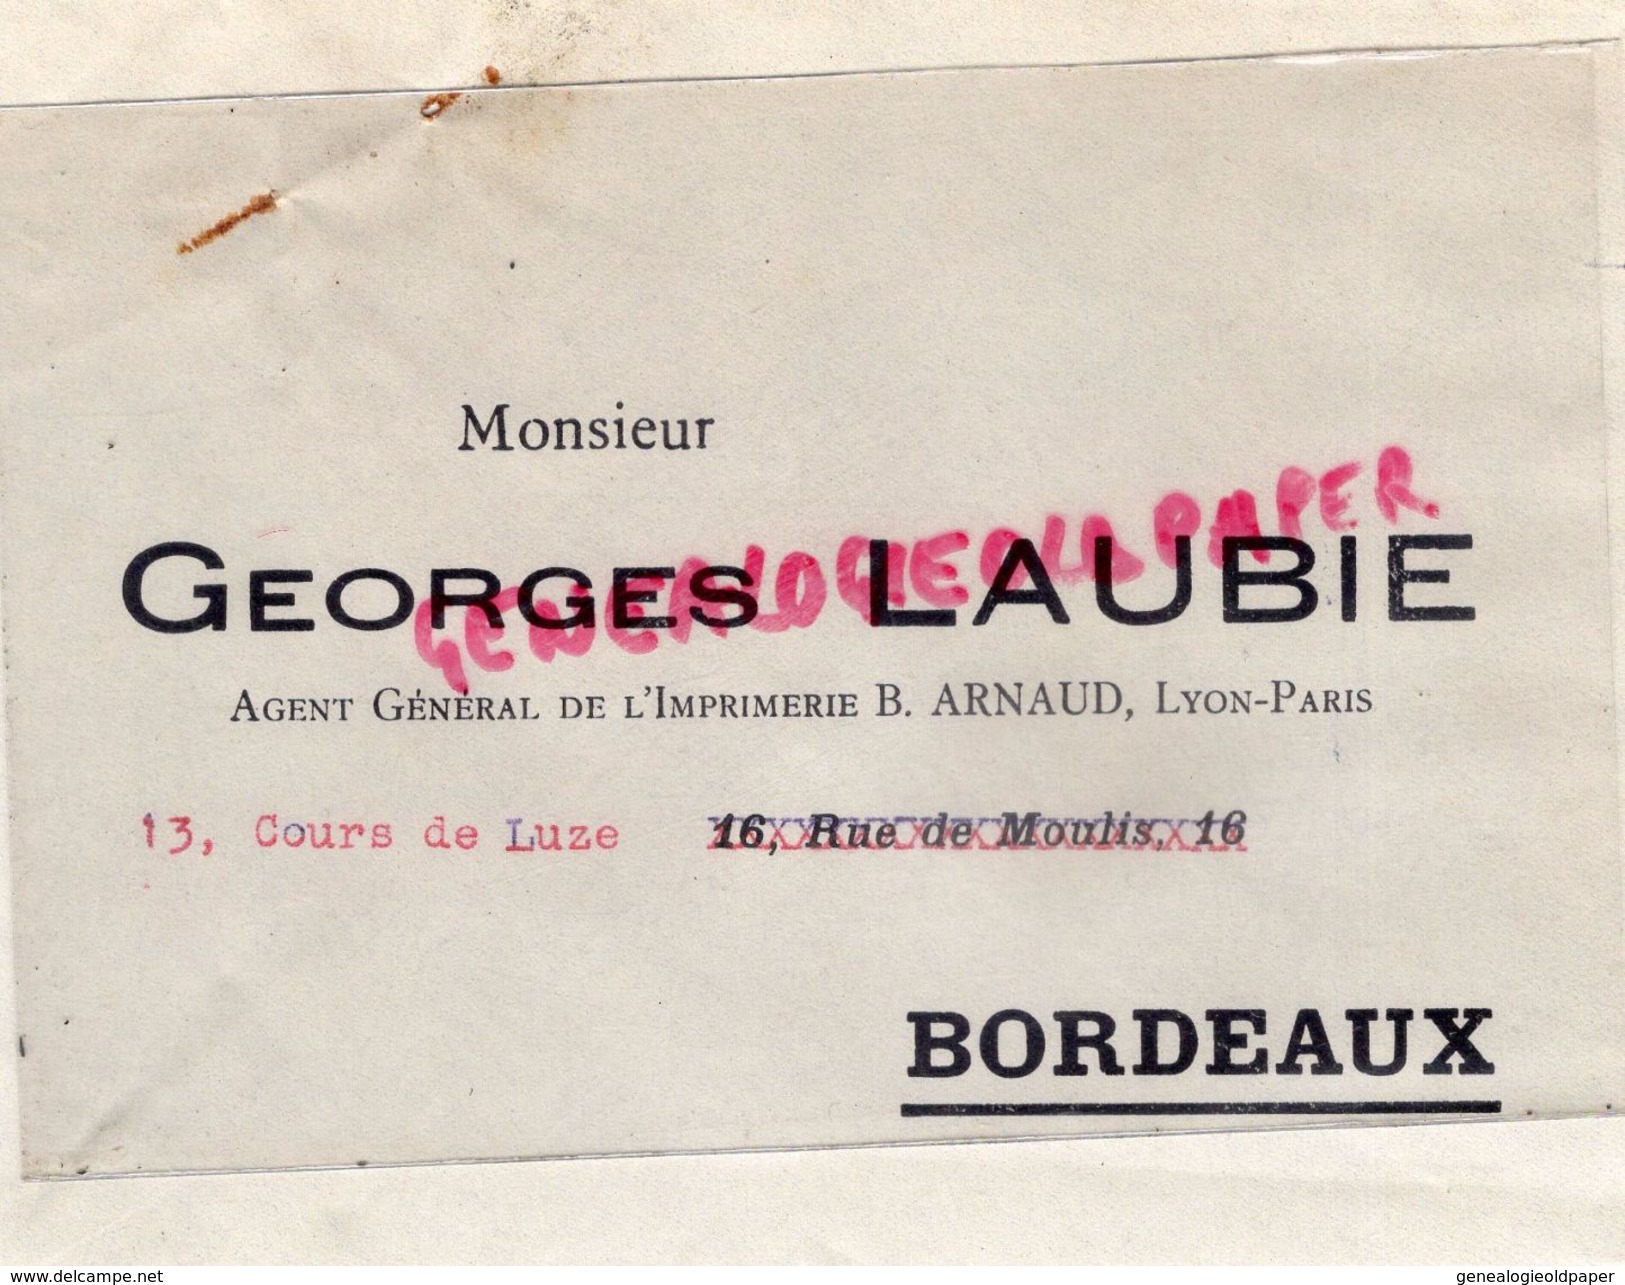 33 - BORDEAUX- ENVELOPPE GEORGES LAUBIE -IMPRIMERIE B. ARNAUD - LYON PARIS- 13 COURS DE LUZE - Printing & Stationeries